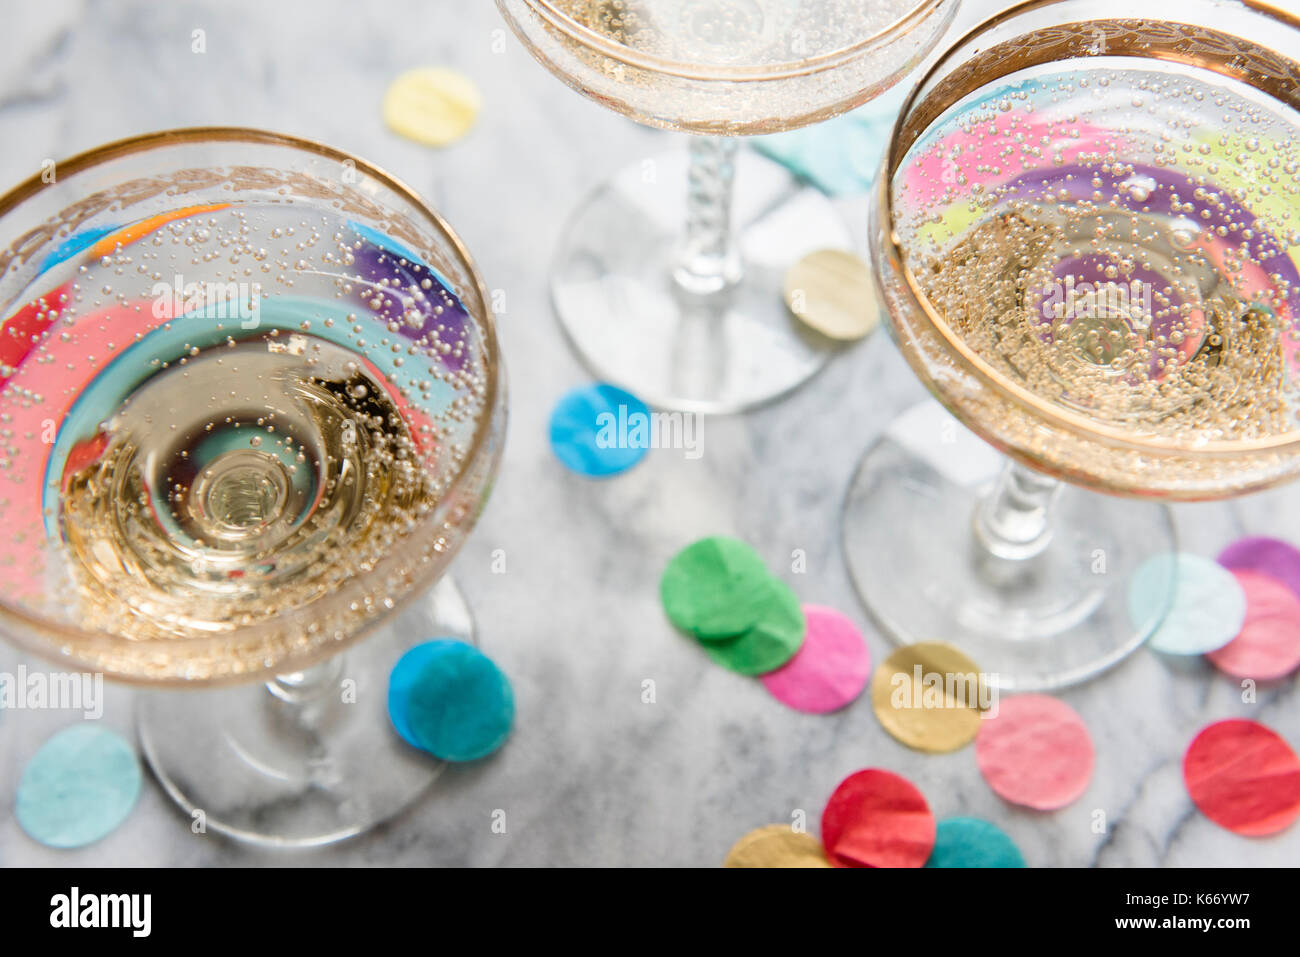 Confetti near glasses of champagne Stock Photo